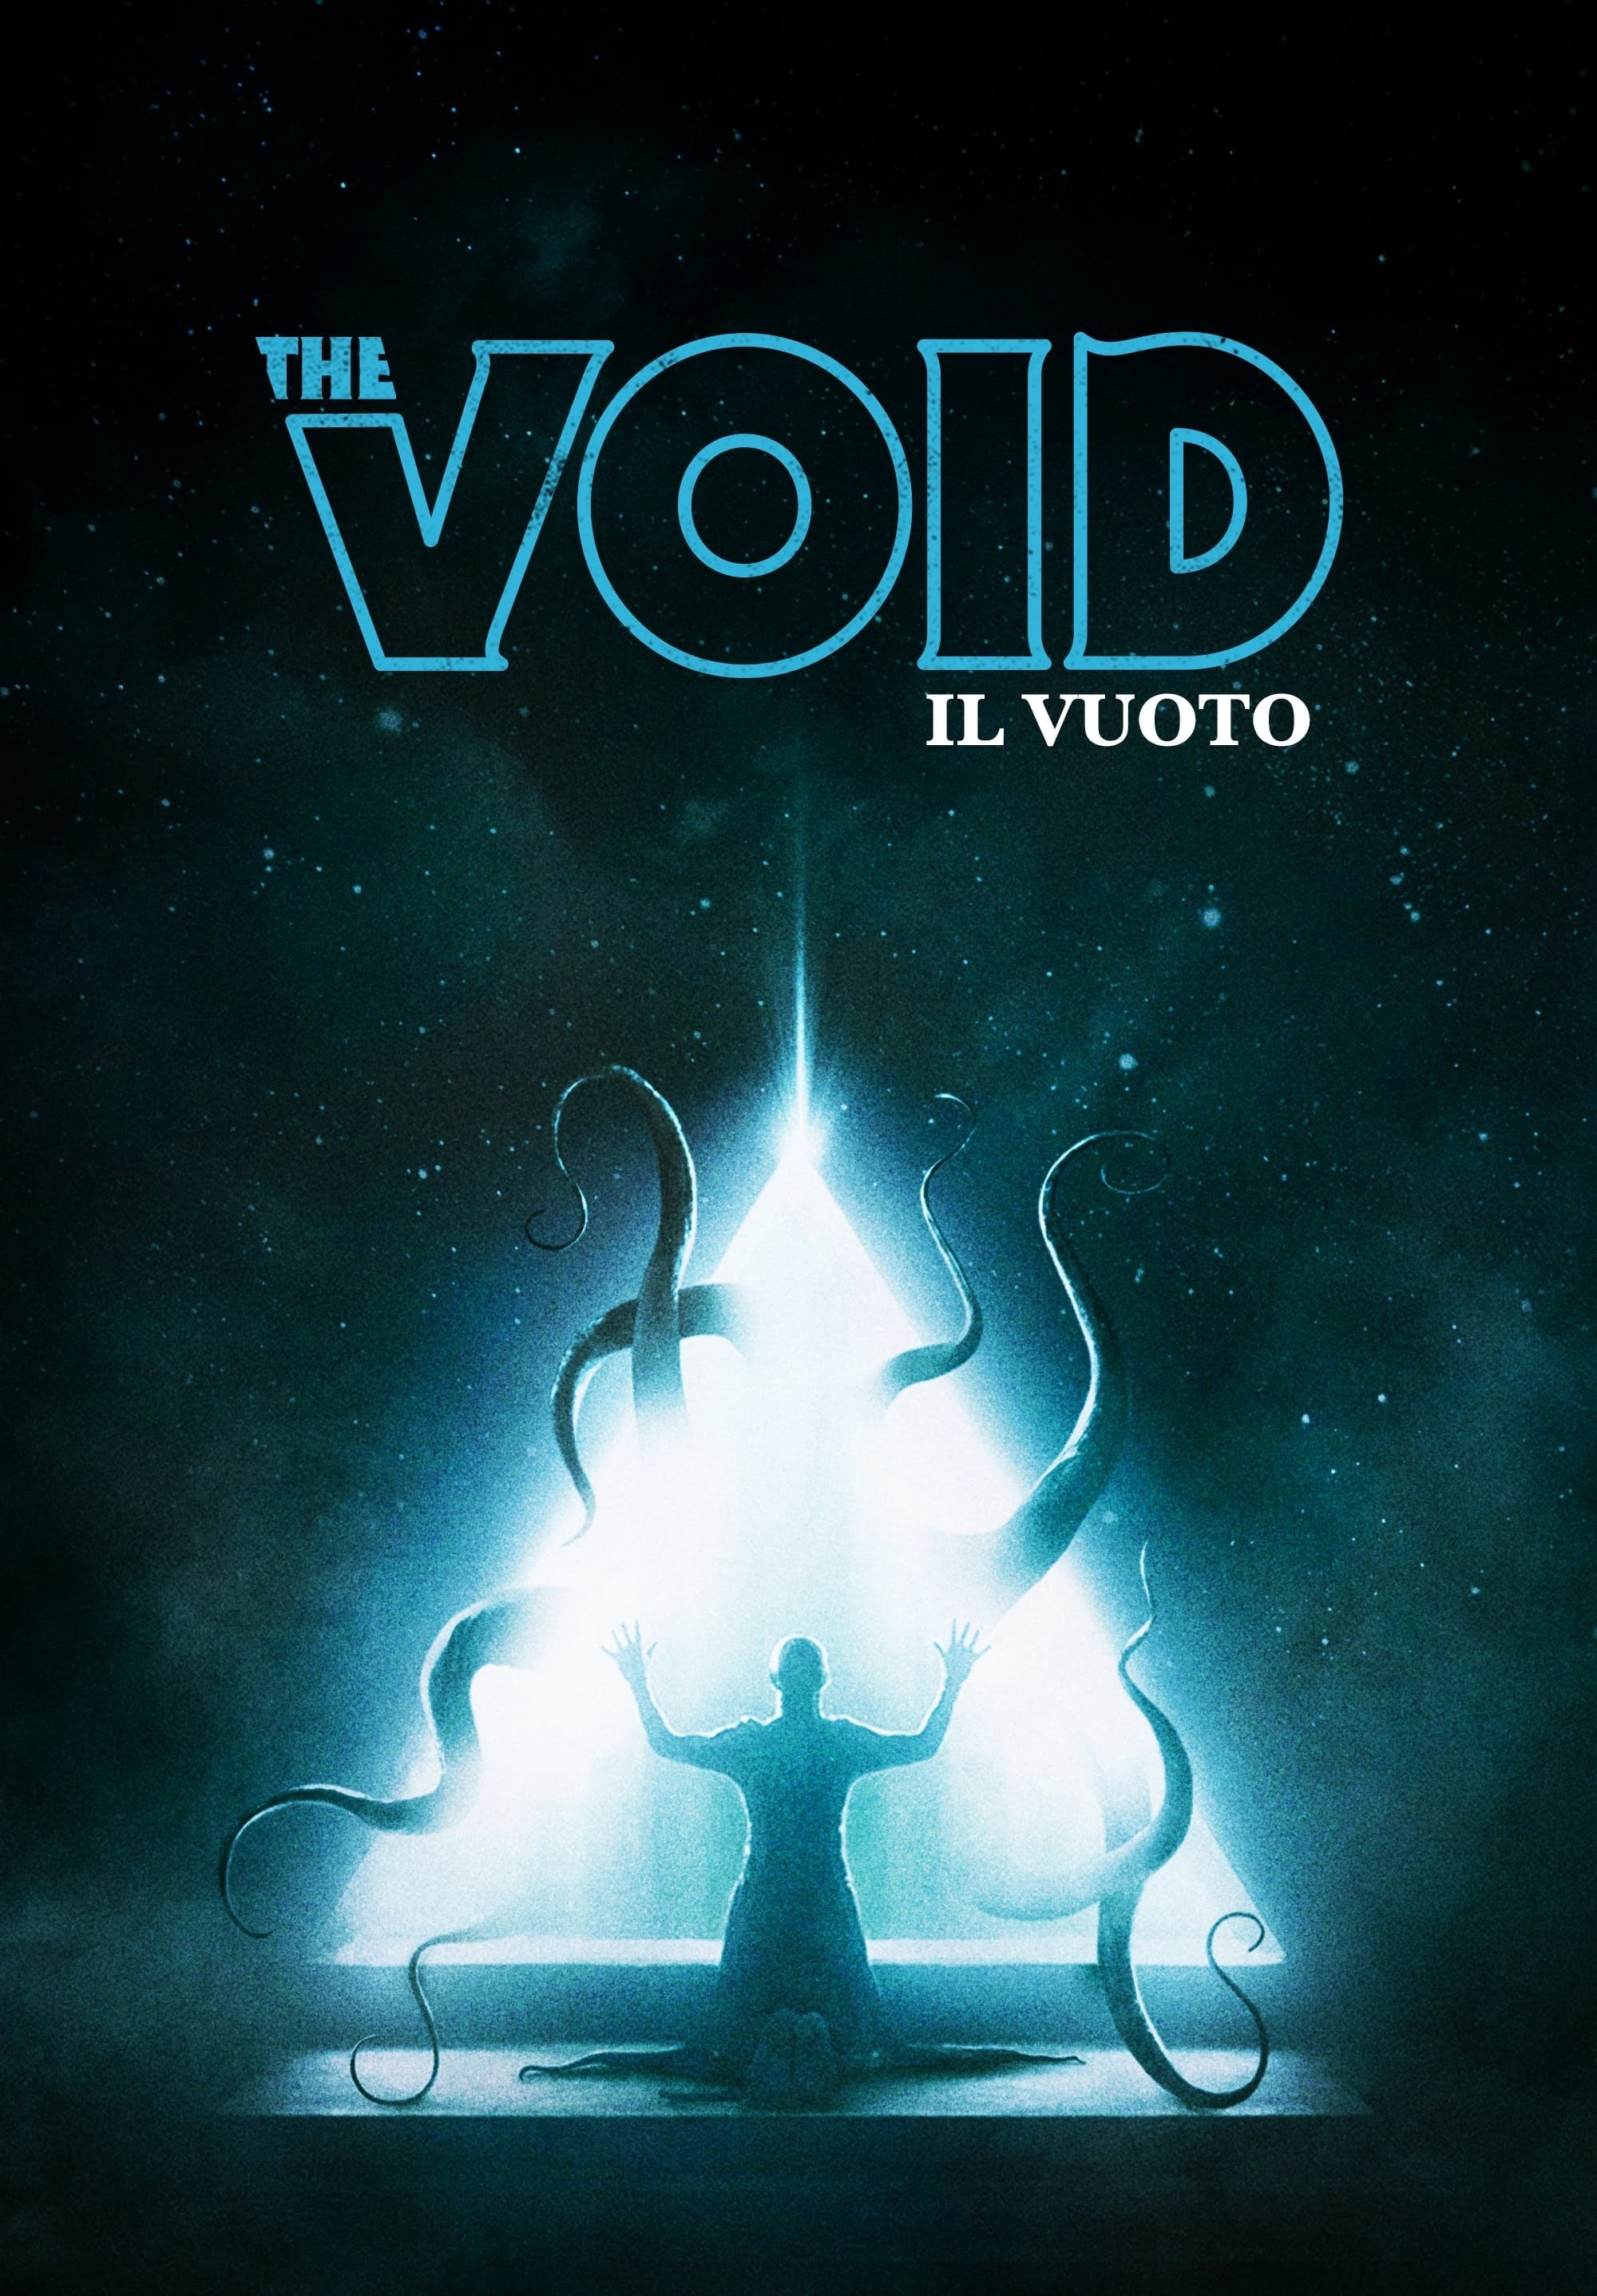 The Void - Il vuoto film